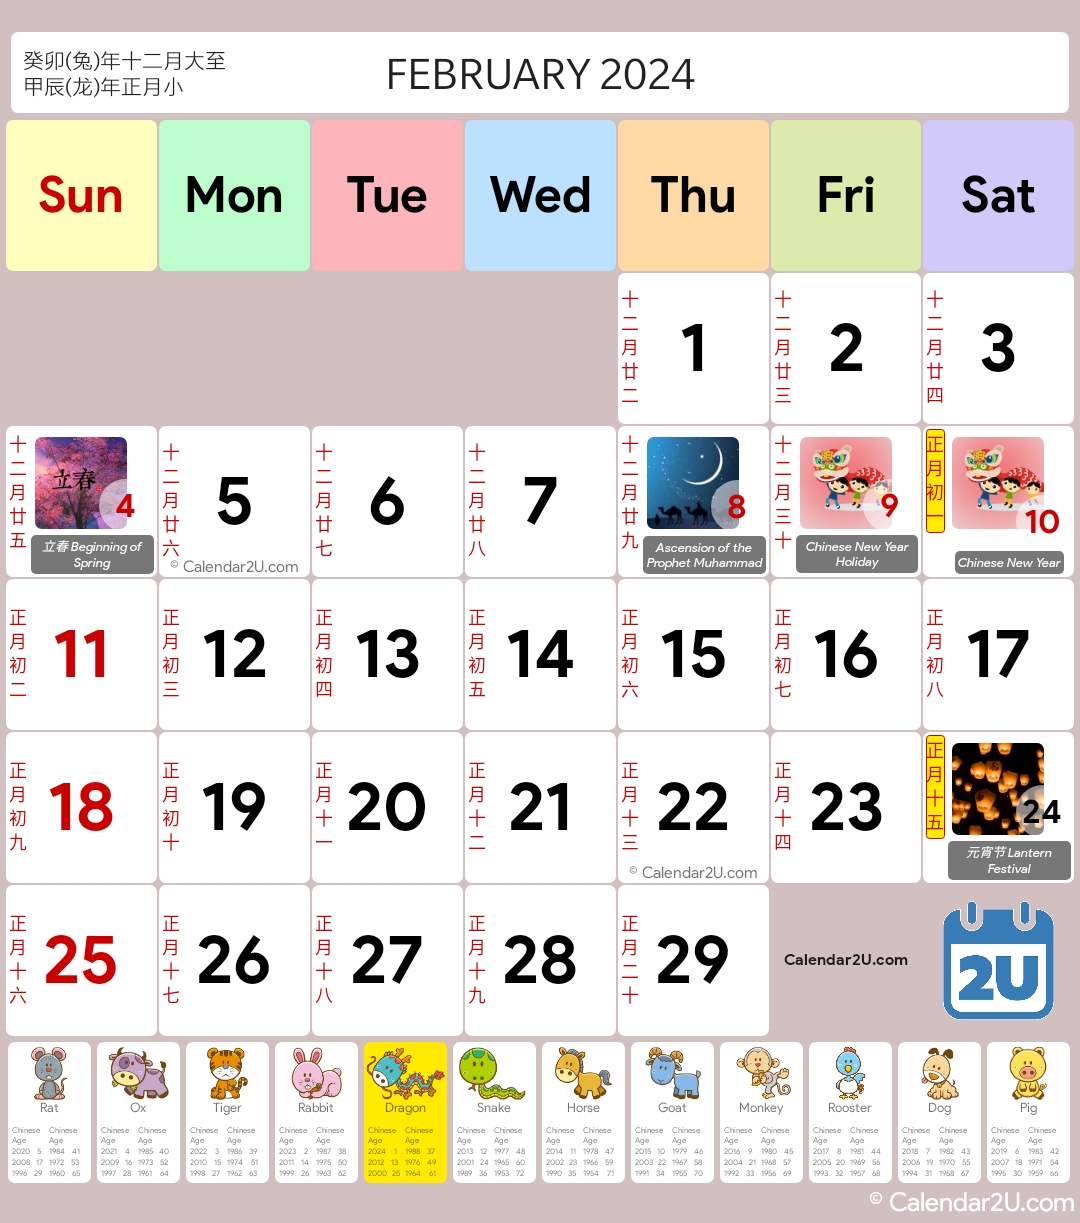 Indonesia - Lunar Cina Calendar